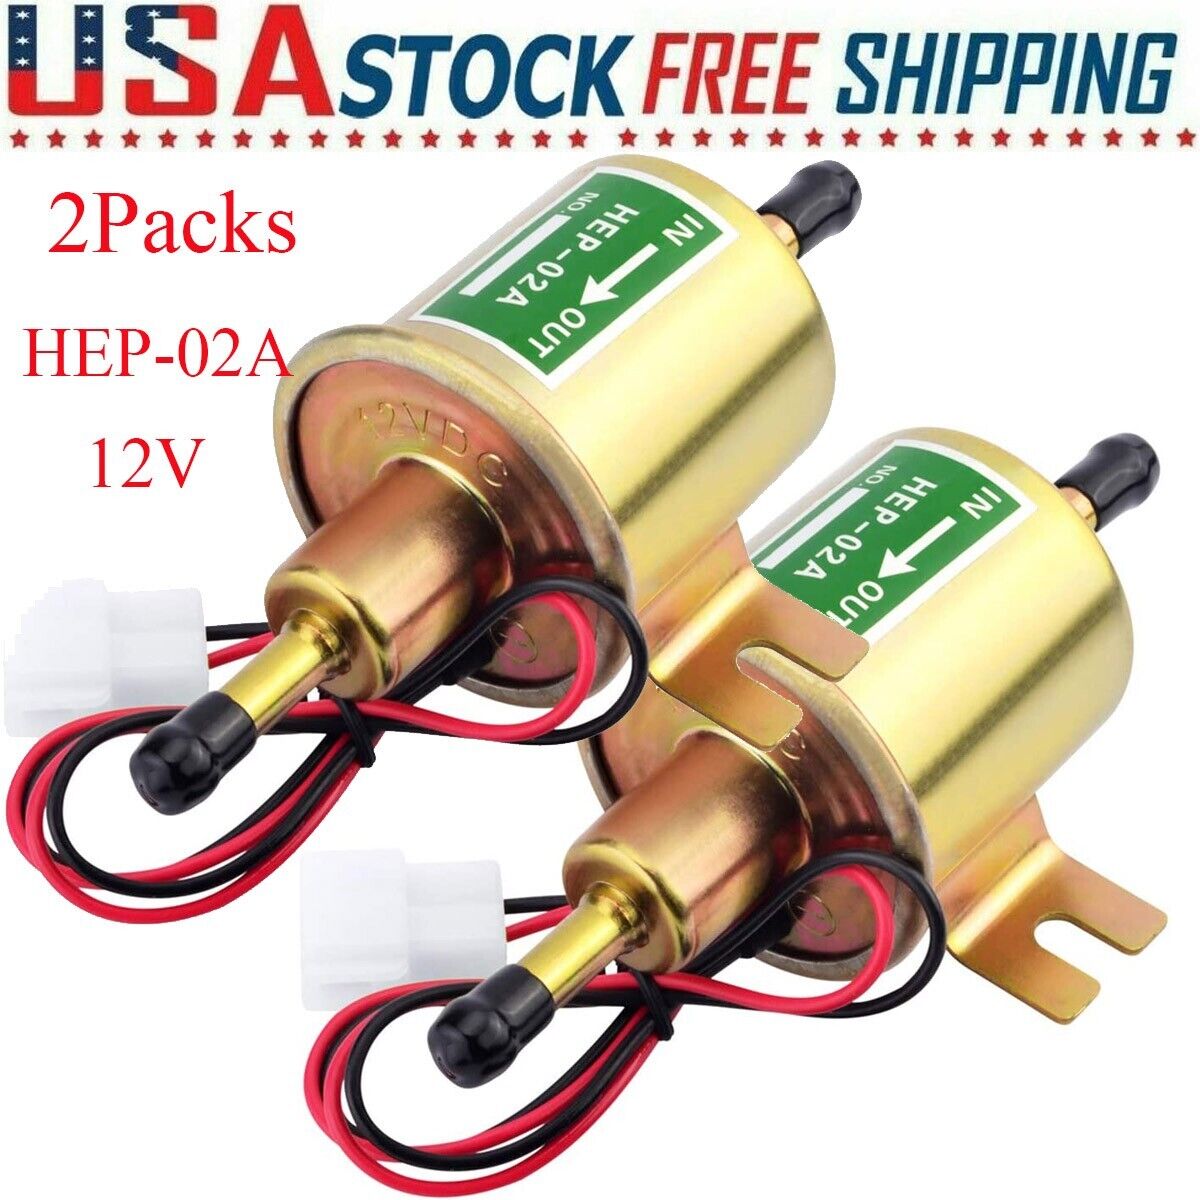 2 Packs 12V Electric Fuel Pump HEP-02A Universal Inline Low Pressure Gas Diesel